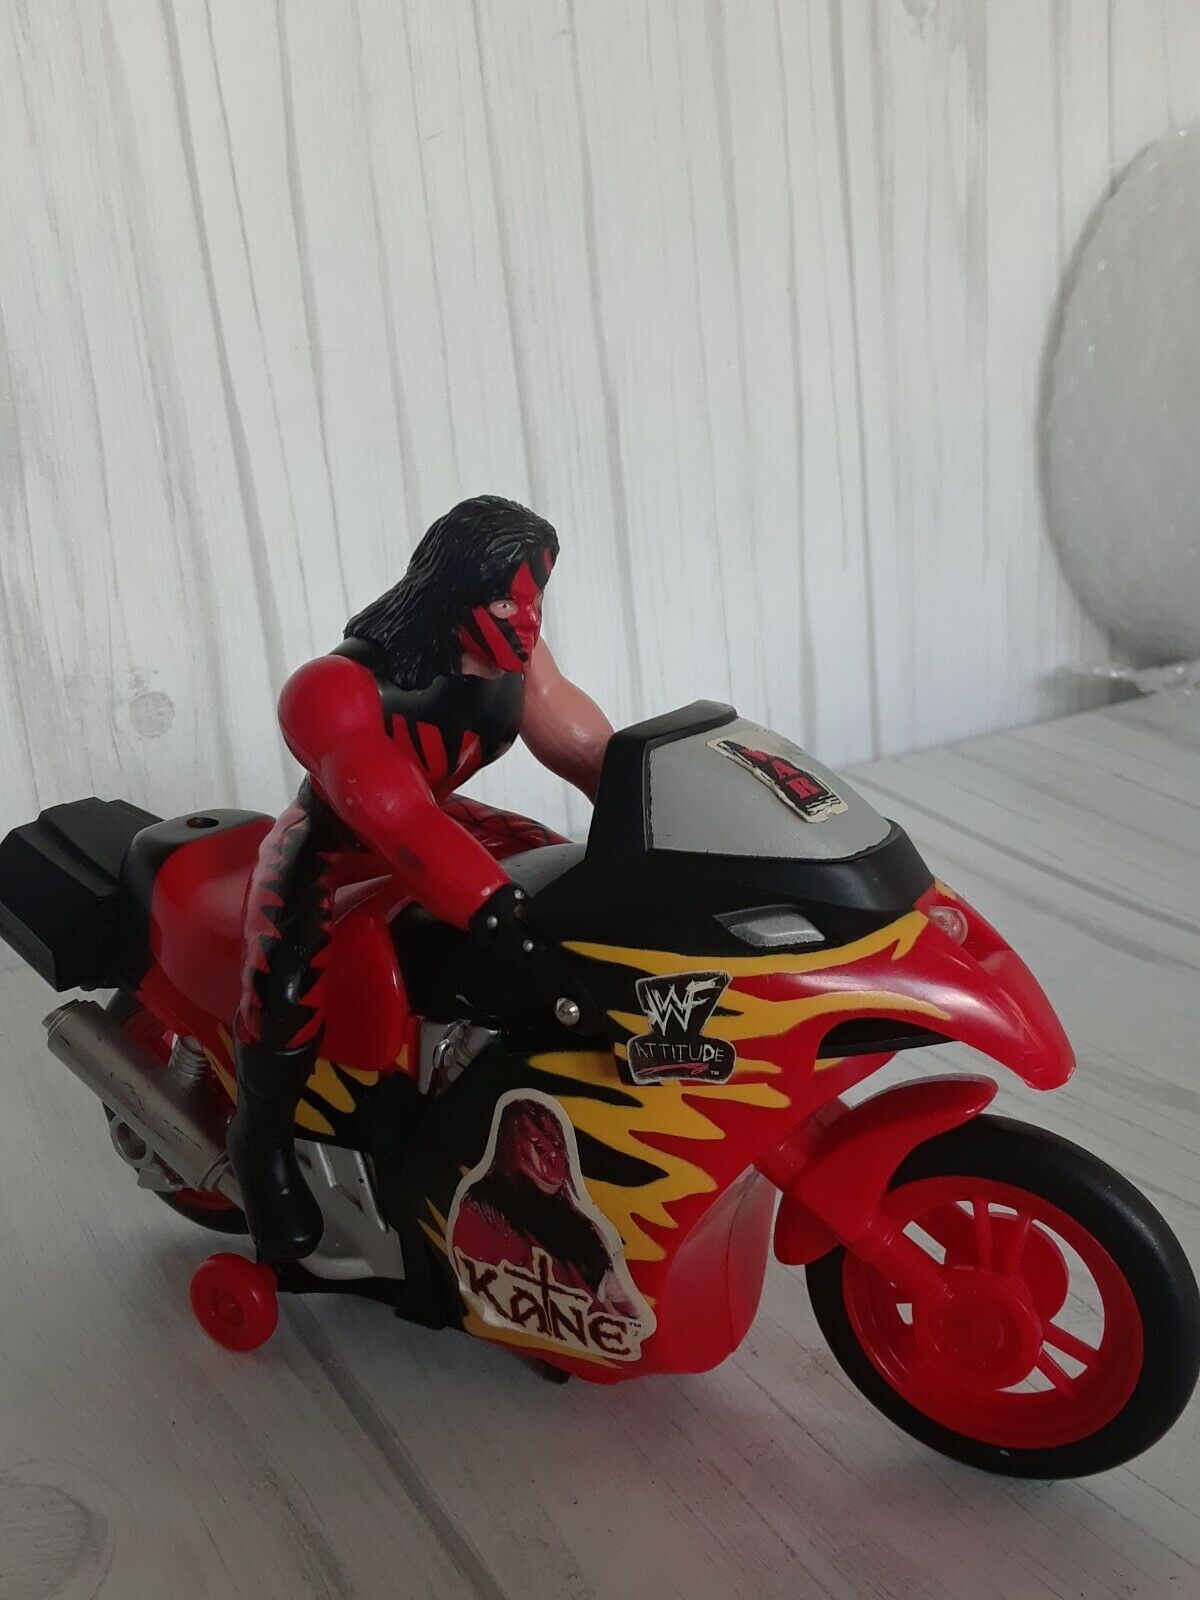 Bump N Go Kane motorcycle